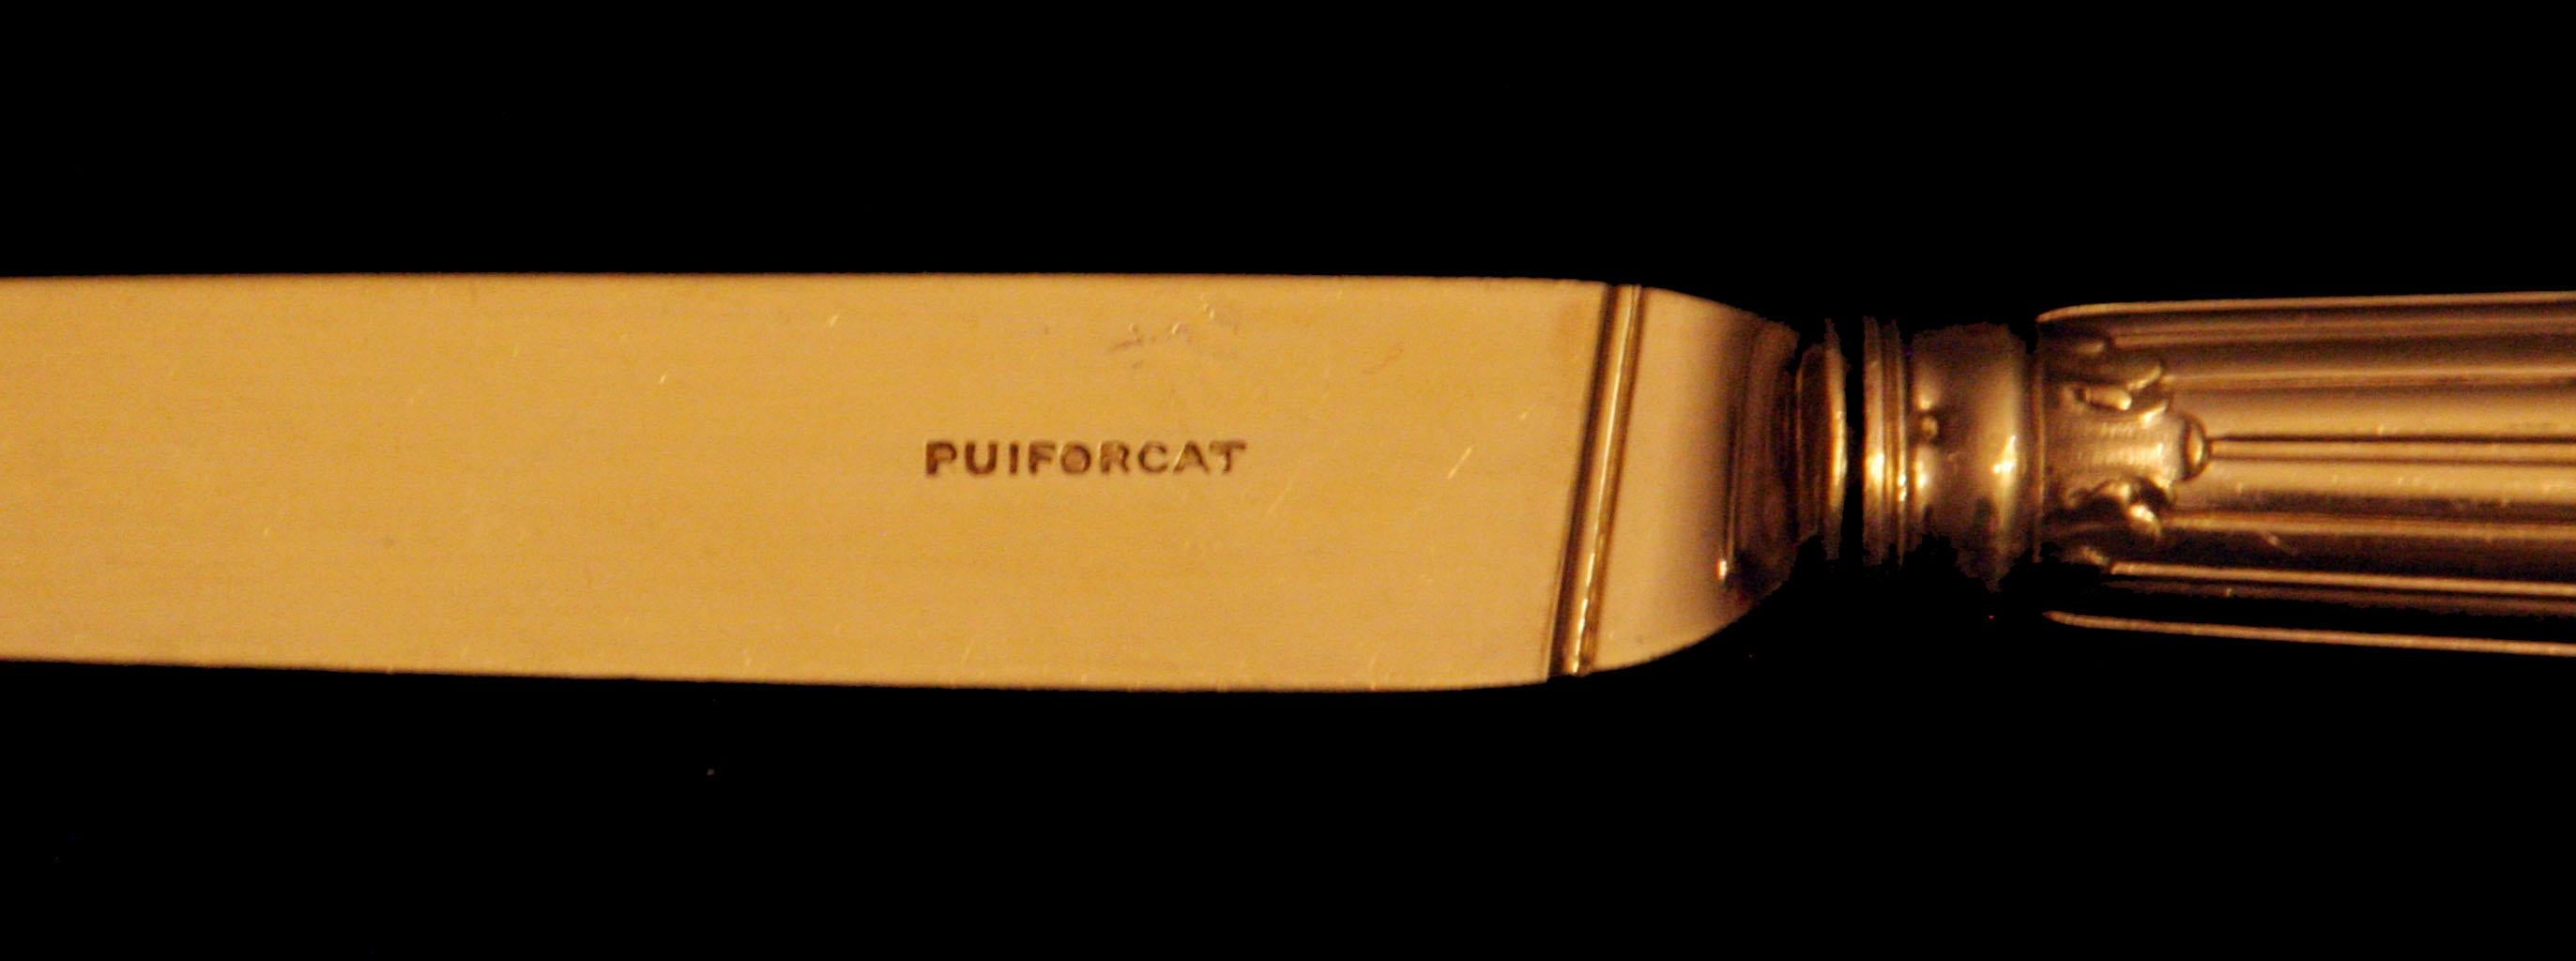 Puiforcat (Hermes) - 246pc 950 Sterling Silver & Vermeil Flatware Set + Chest ! For Sale 8